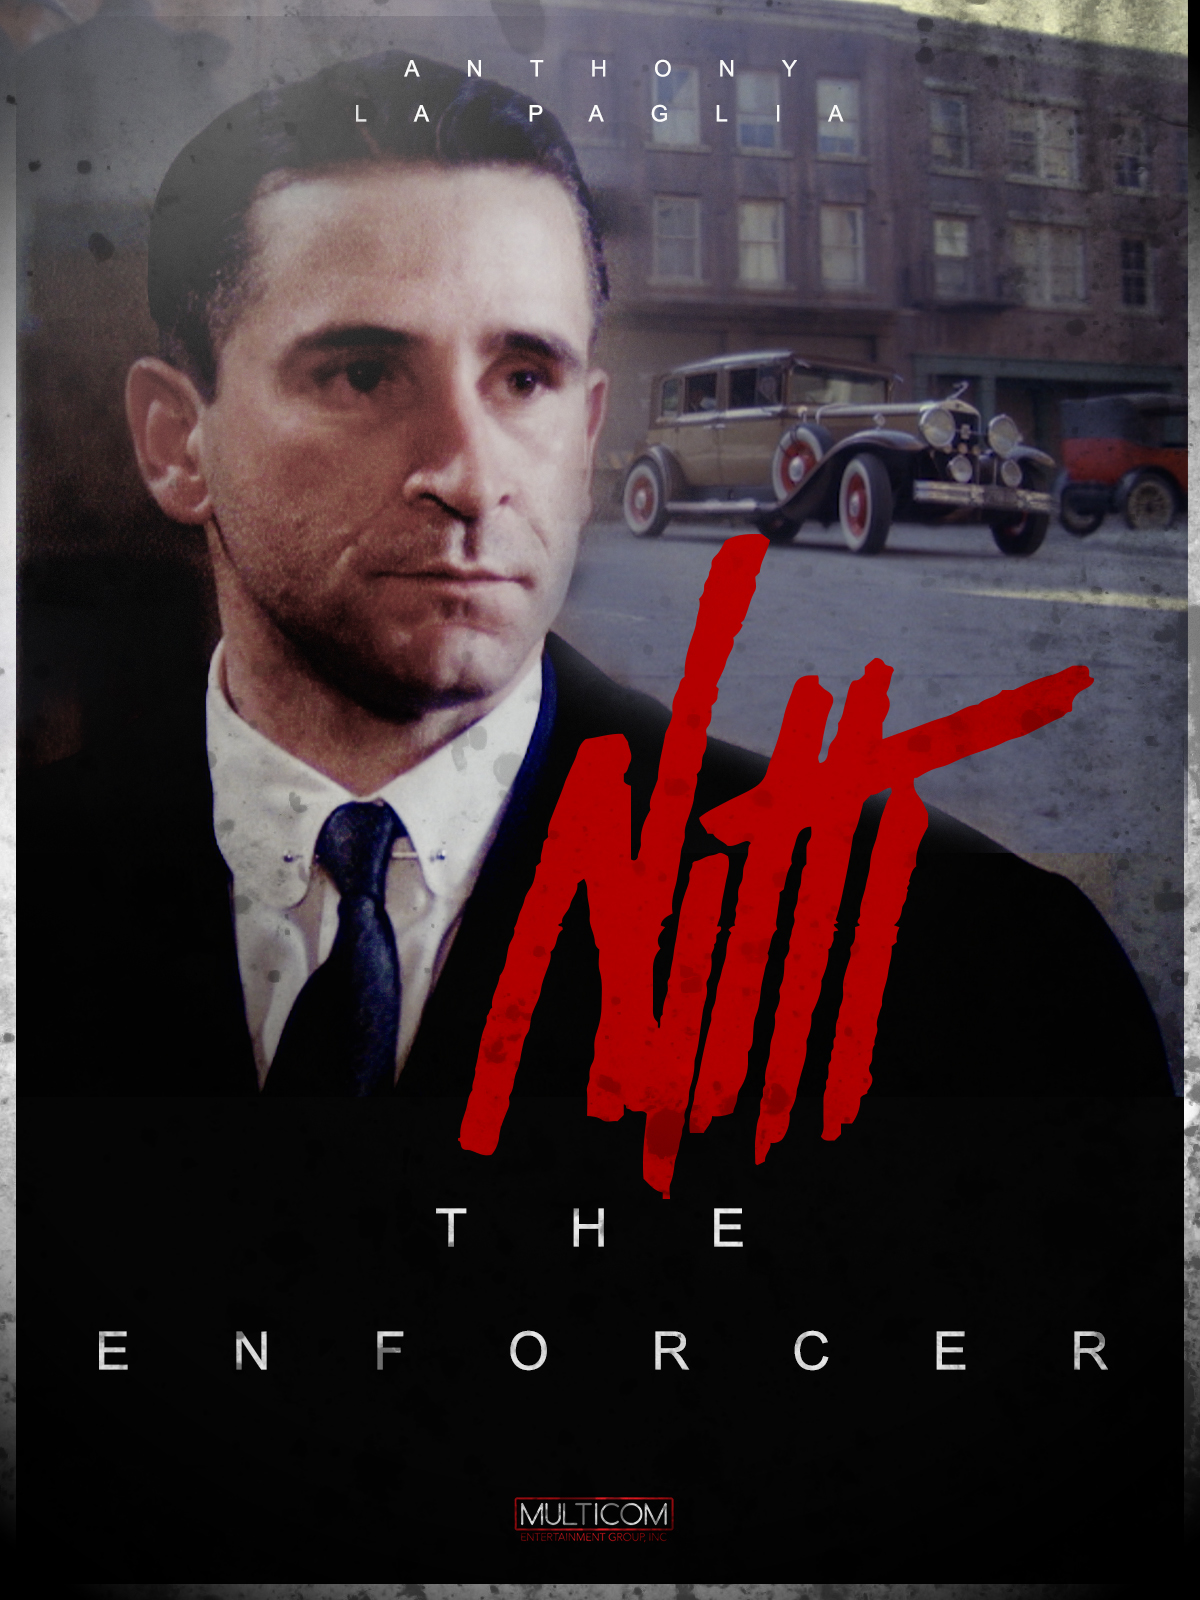 Frank Nitti: The Enforcer (1988) Screenshot 2